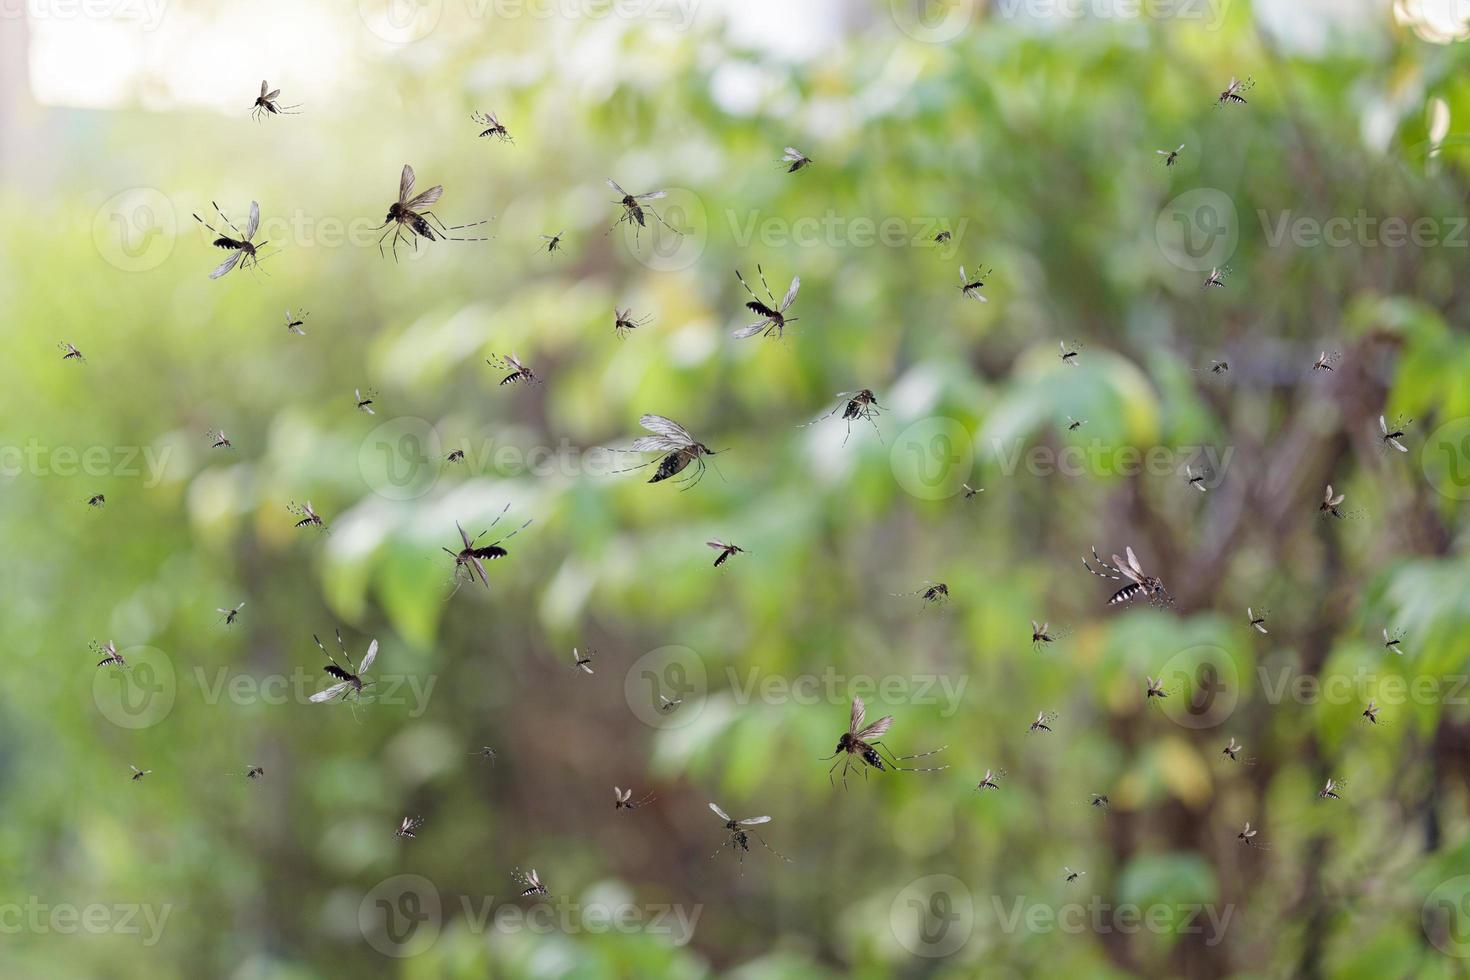 zwerm van muggen vlieg in de park foto